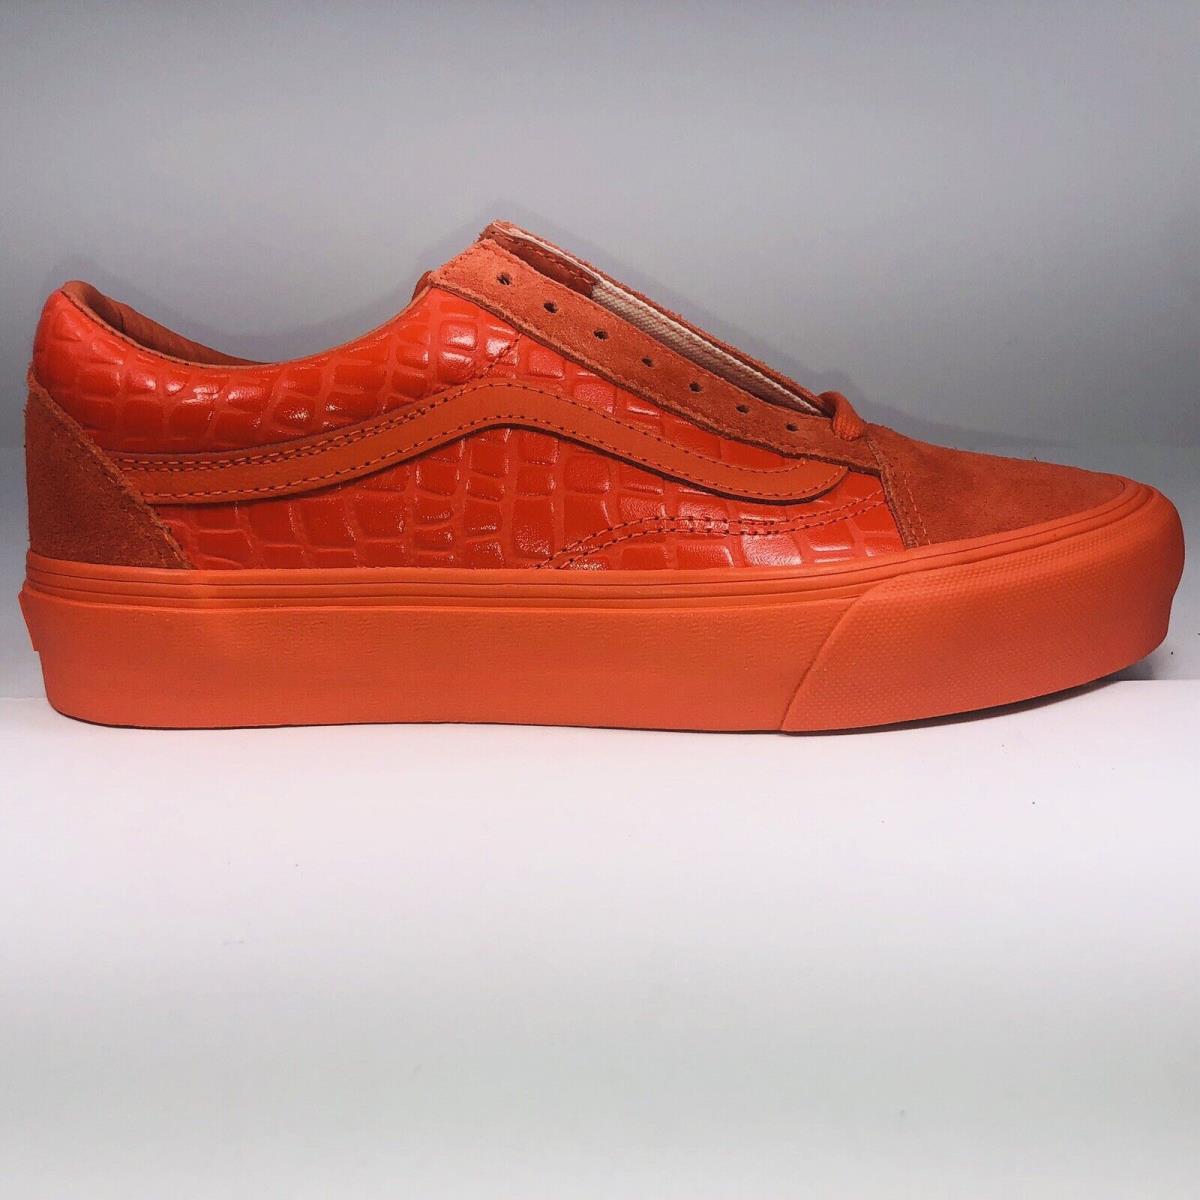 Vans Old Skool Vault LX Croc Skin Flame Orange Shoe Mens Size 7.5/ Womens Size 9